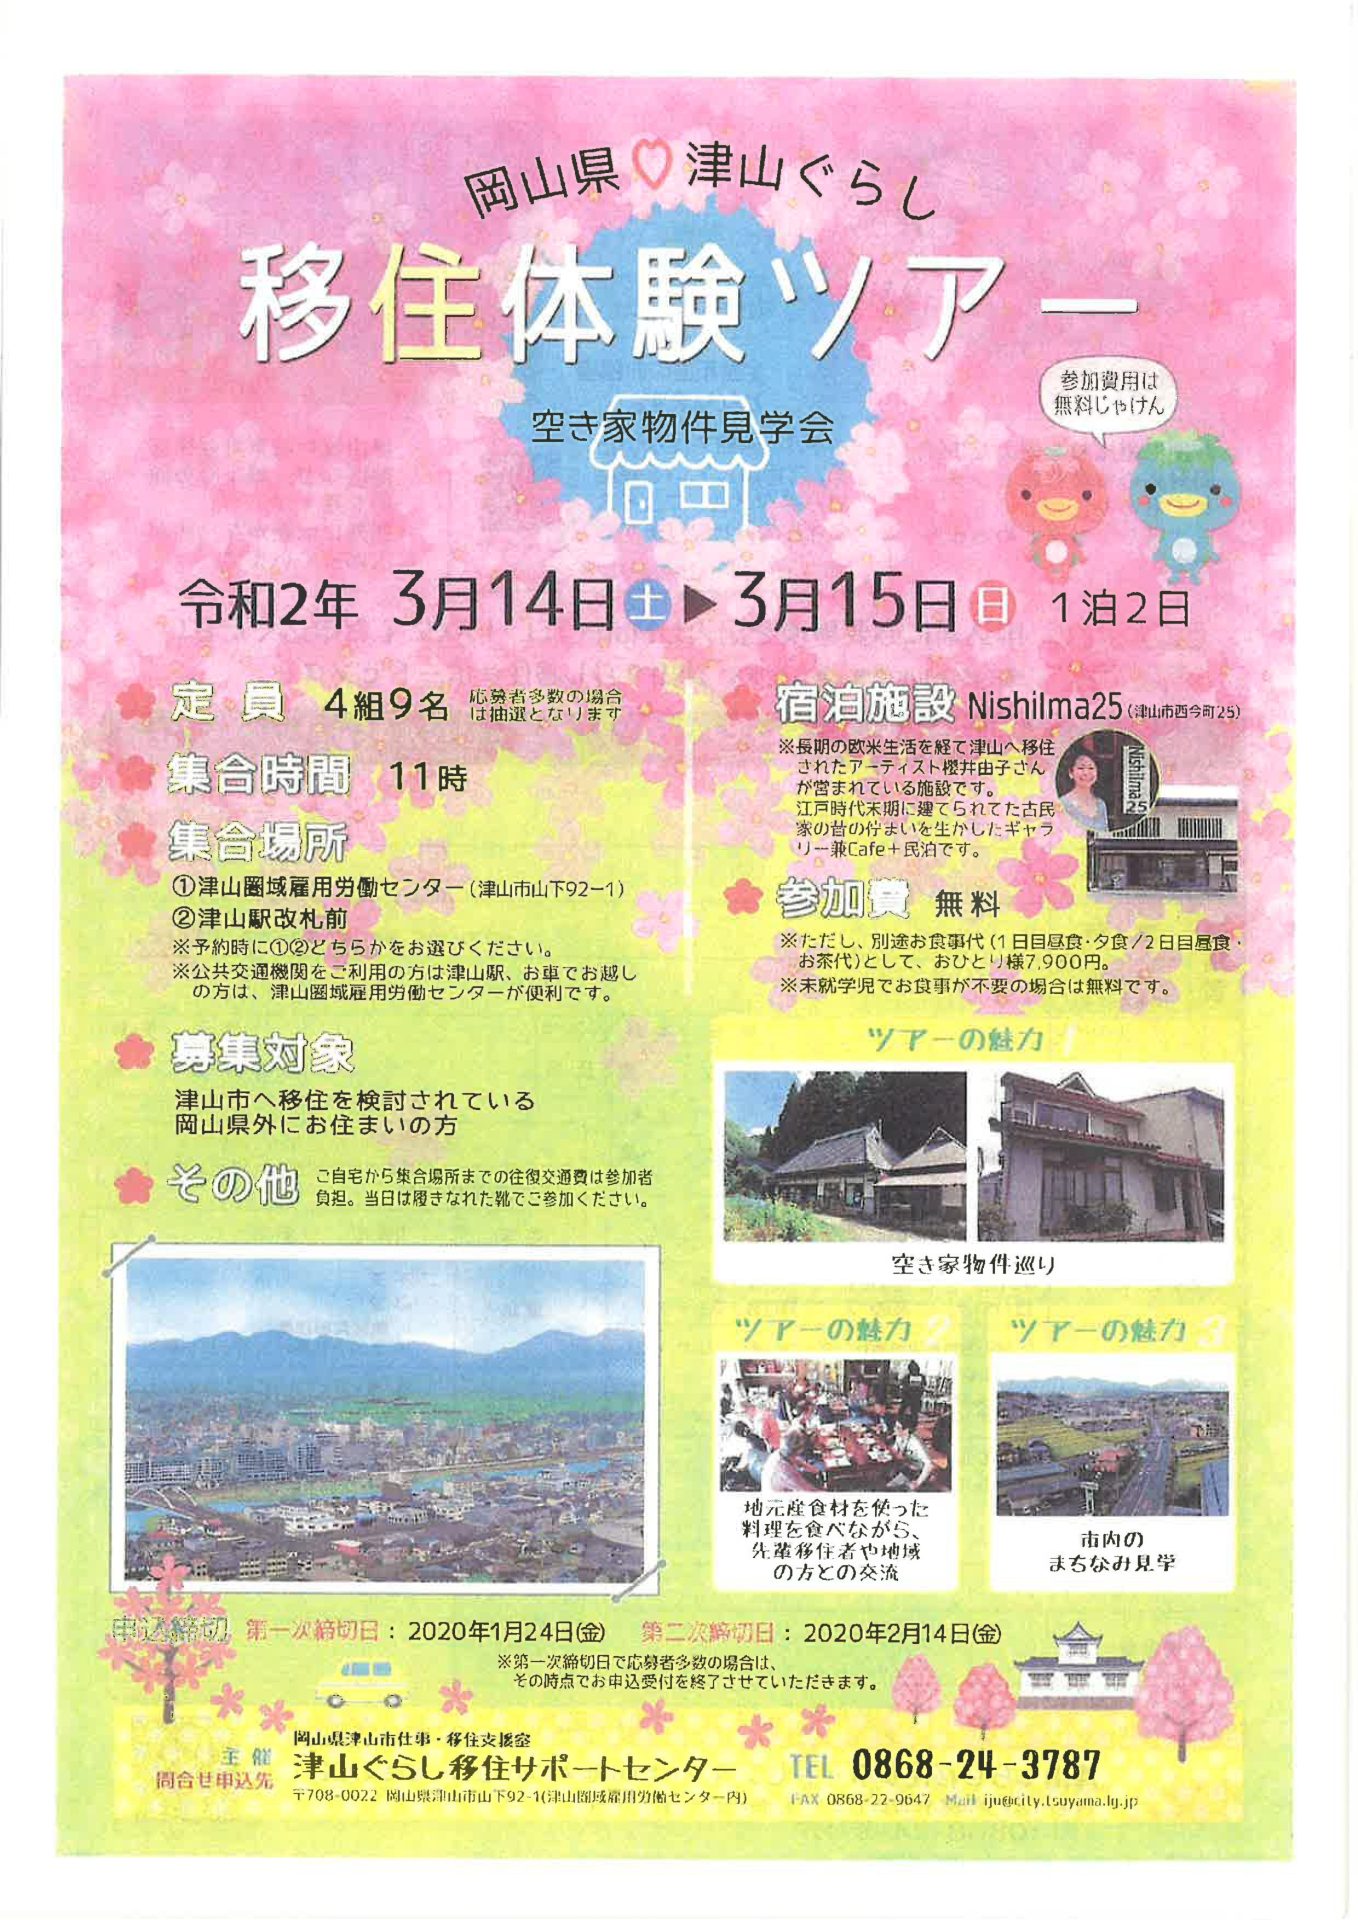 【開催中止】津山ぐらし移住体験ツアー | 移住関連イベント情報